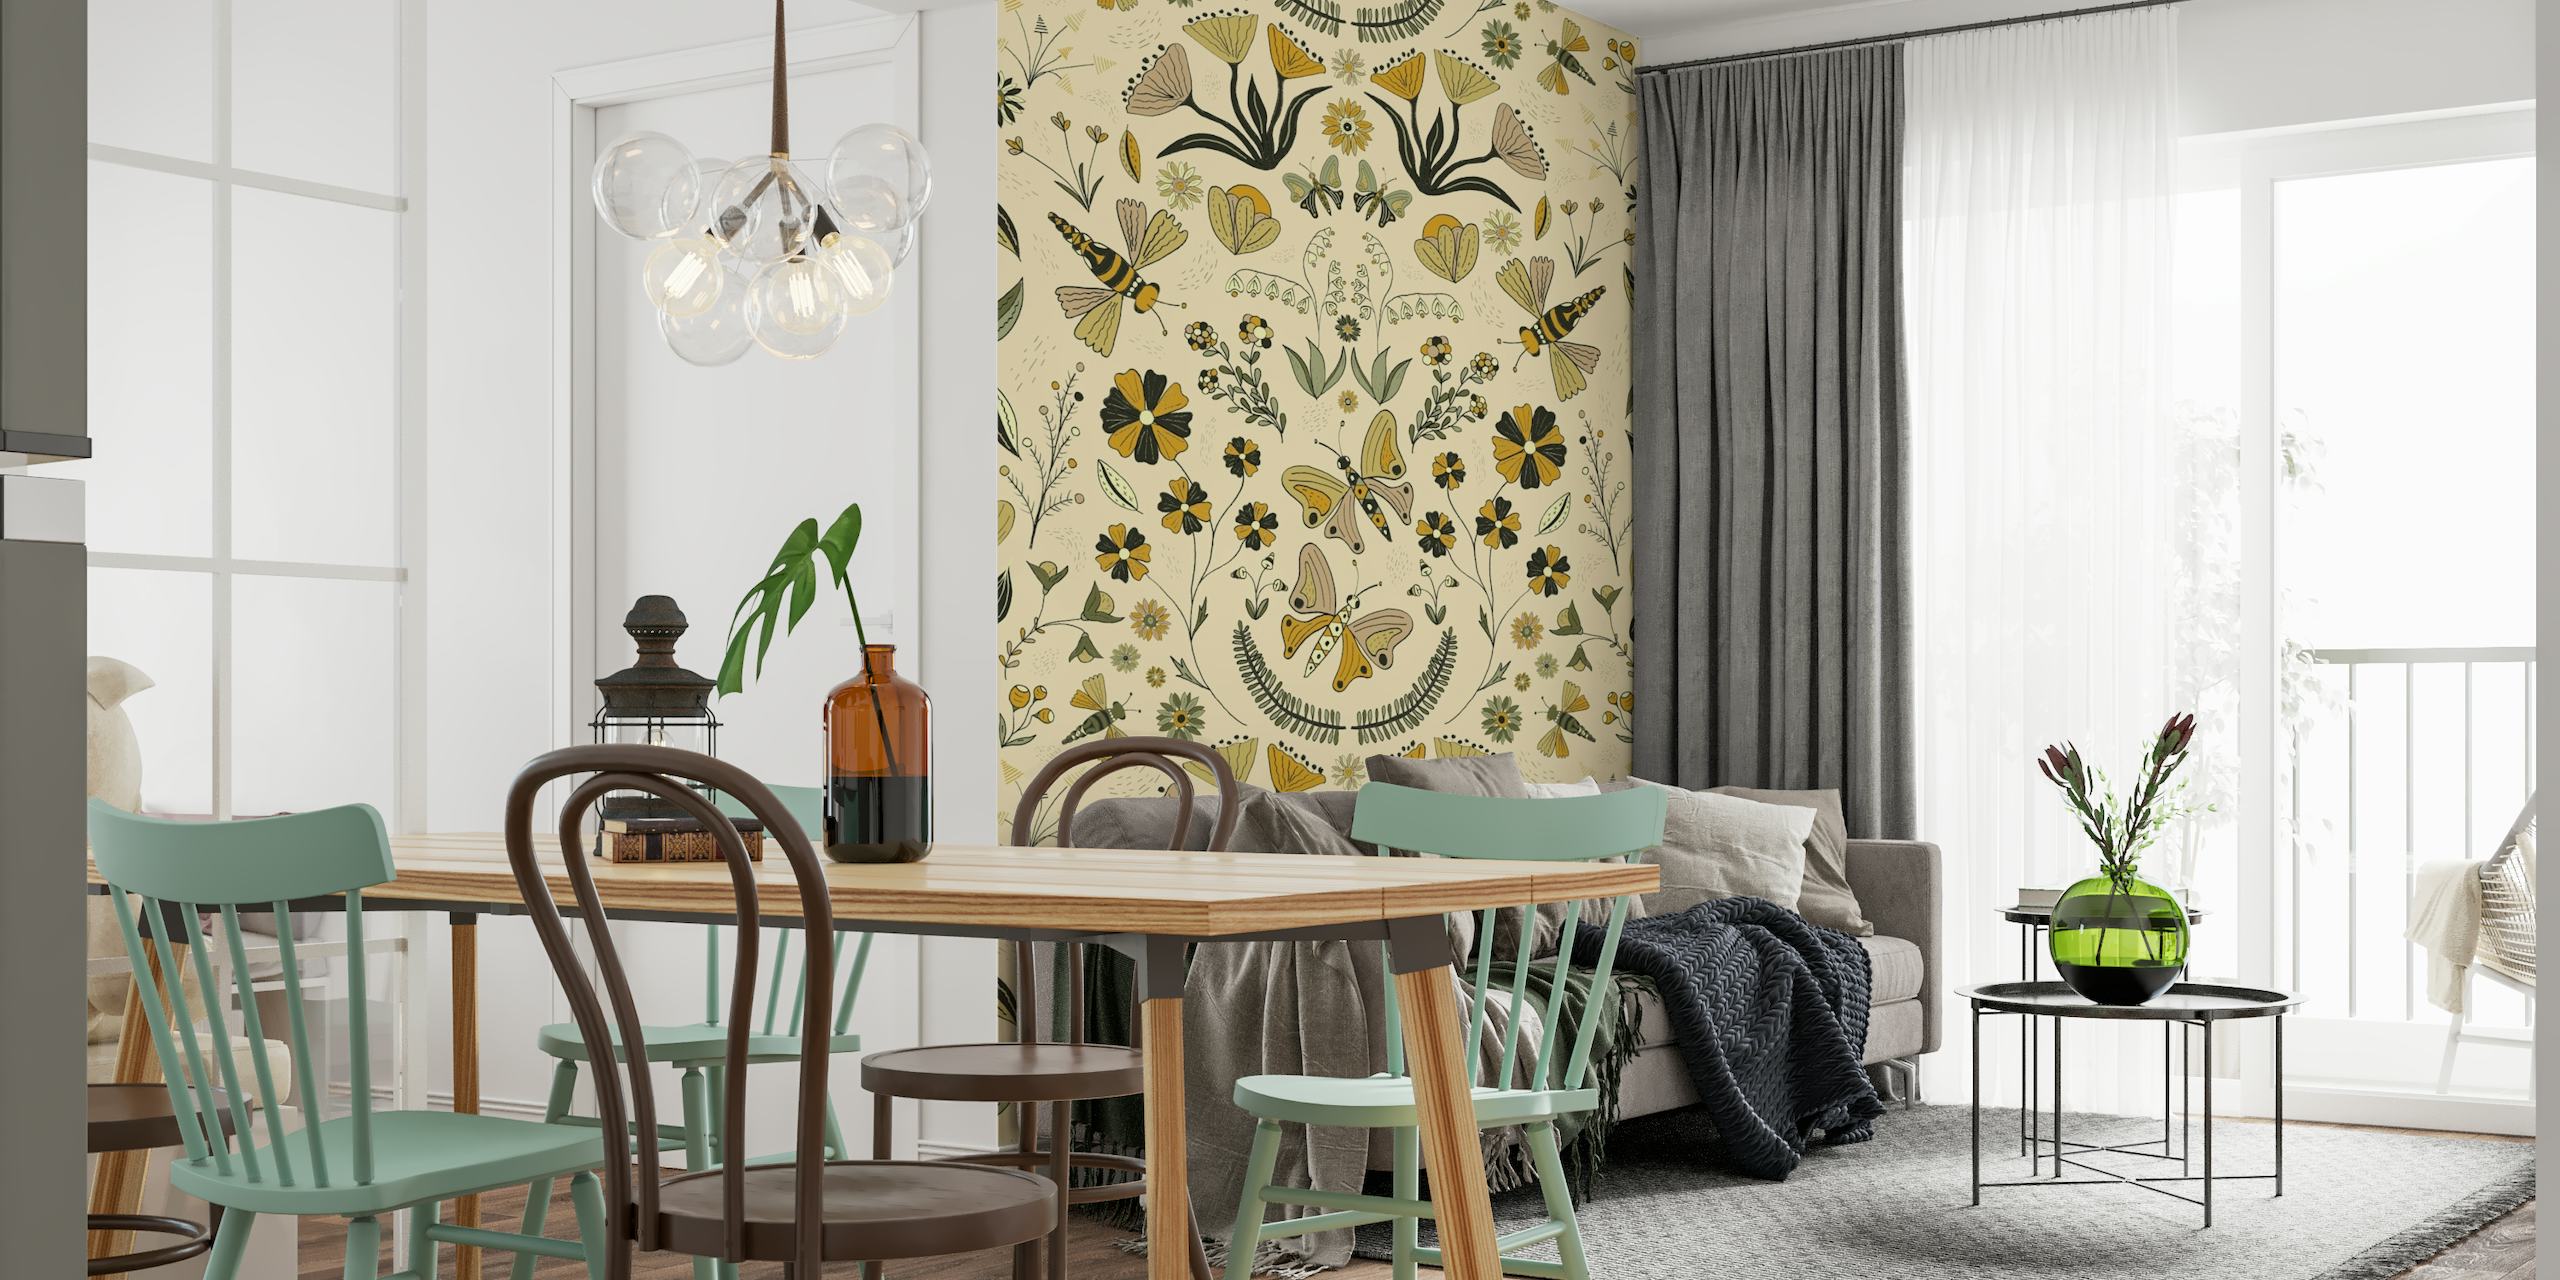 Illustratief fotobehang met een symmetrisch patroon van planten, vlinders en abstracte dieren in een tuinomgeving